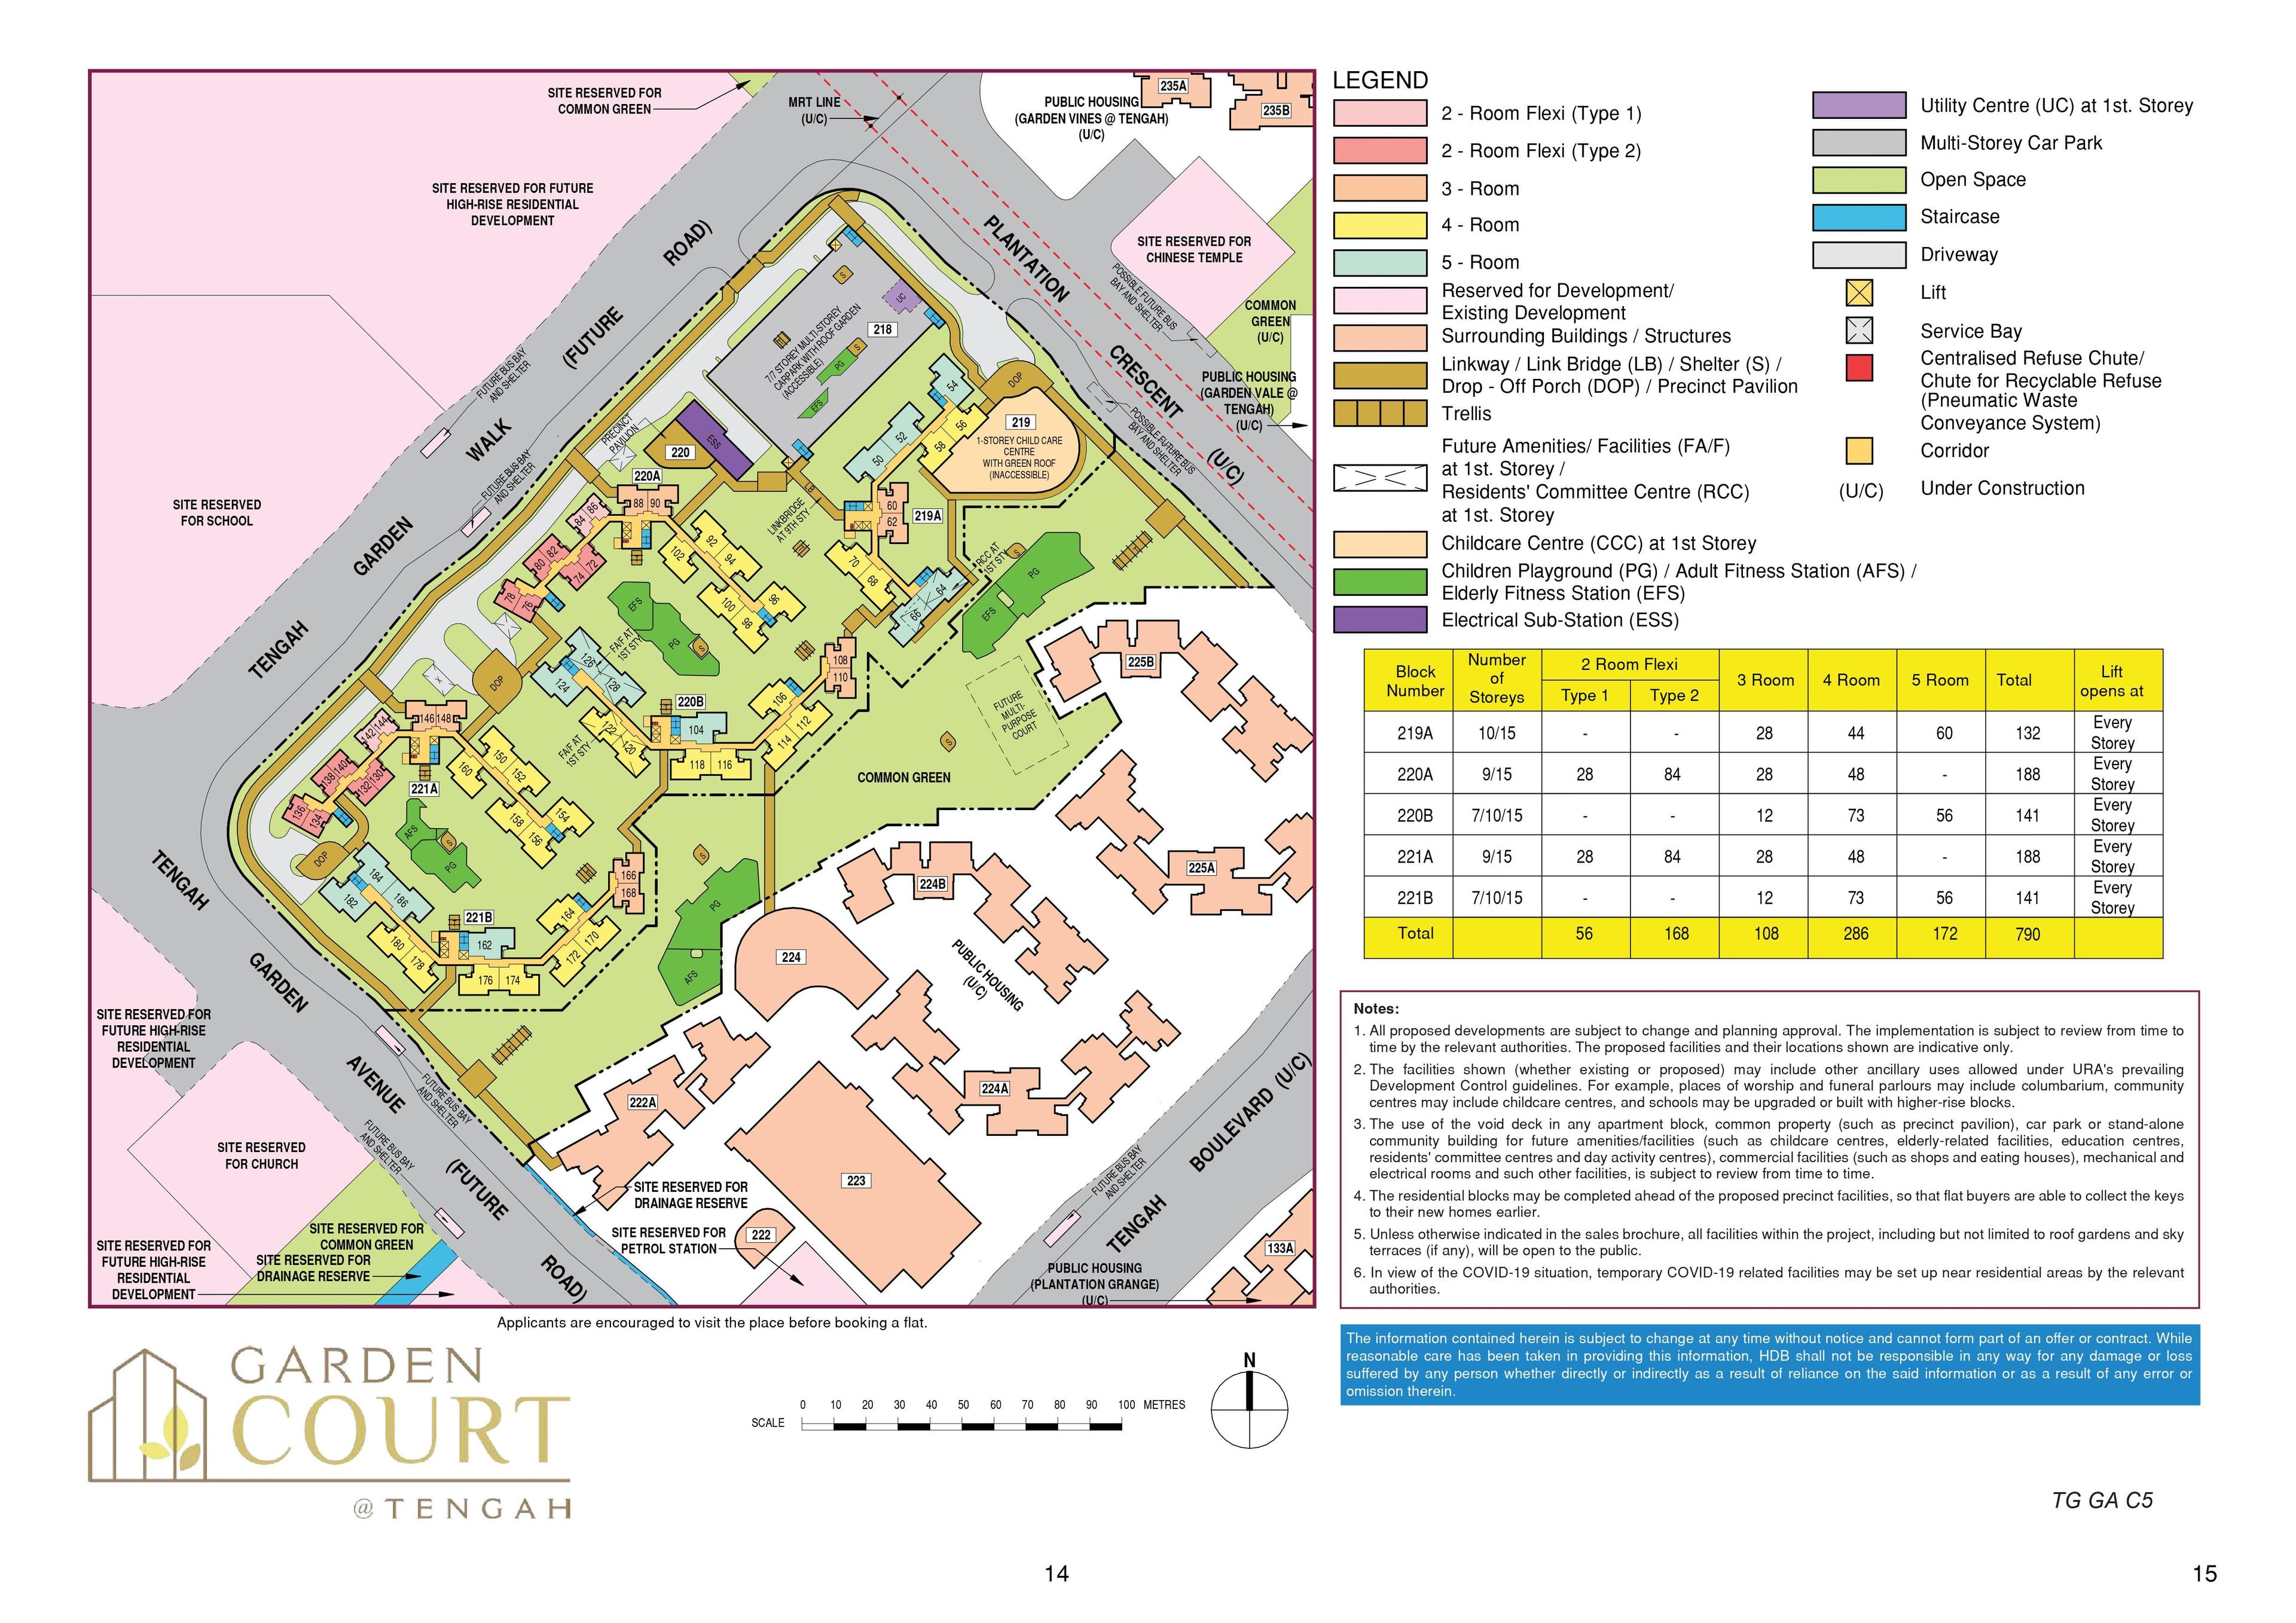 Garden Court @ Tengah Site Plan